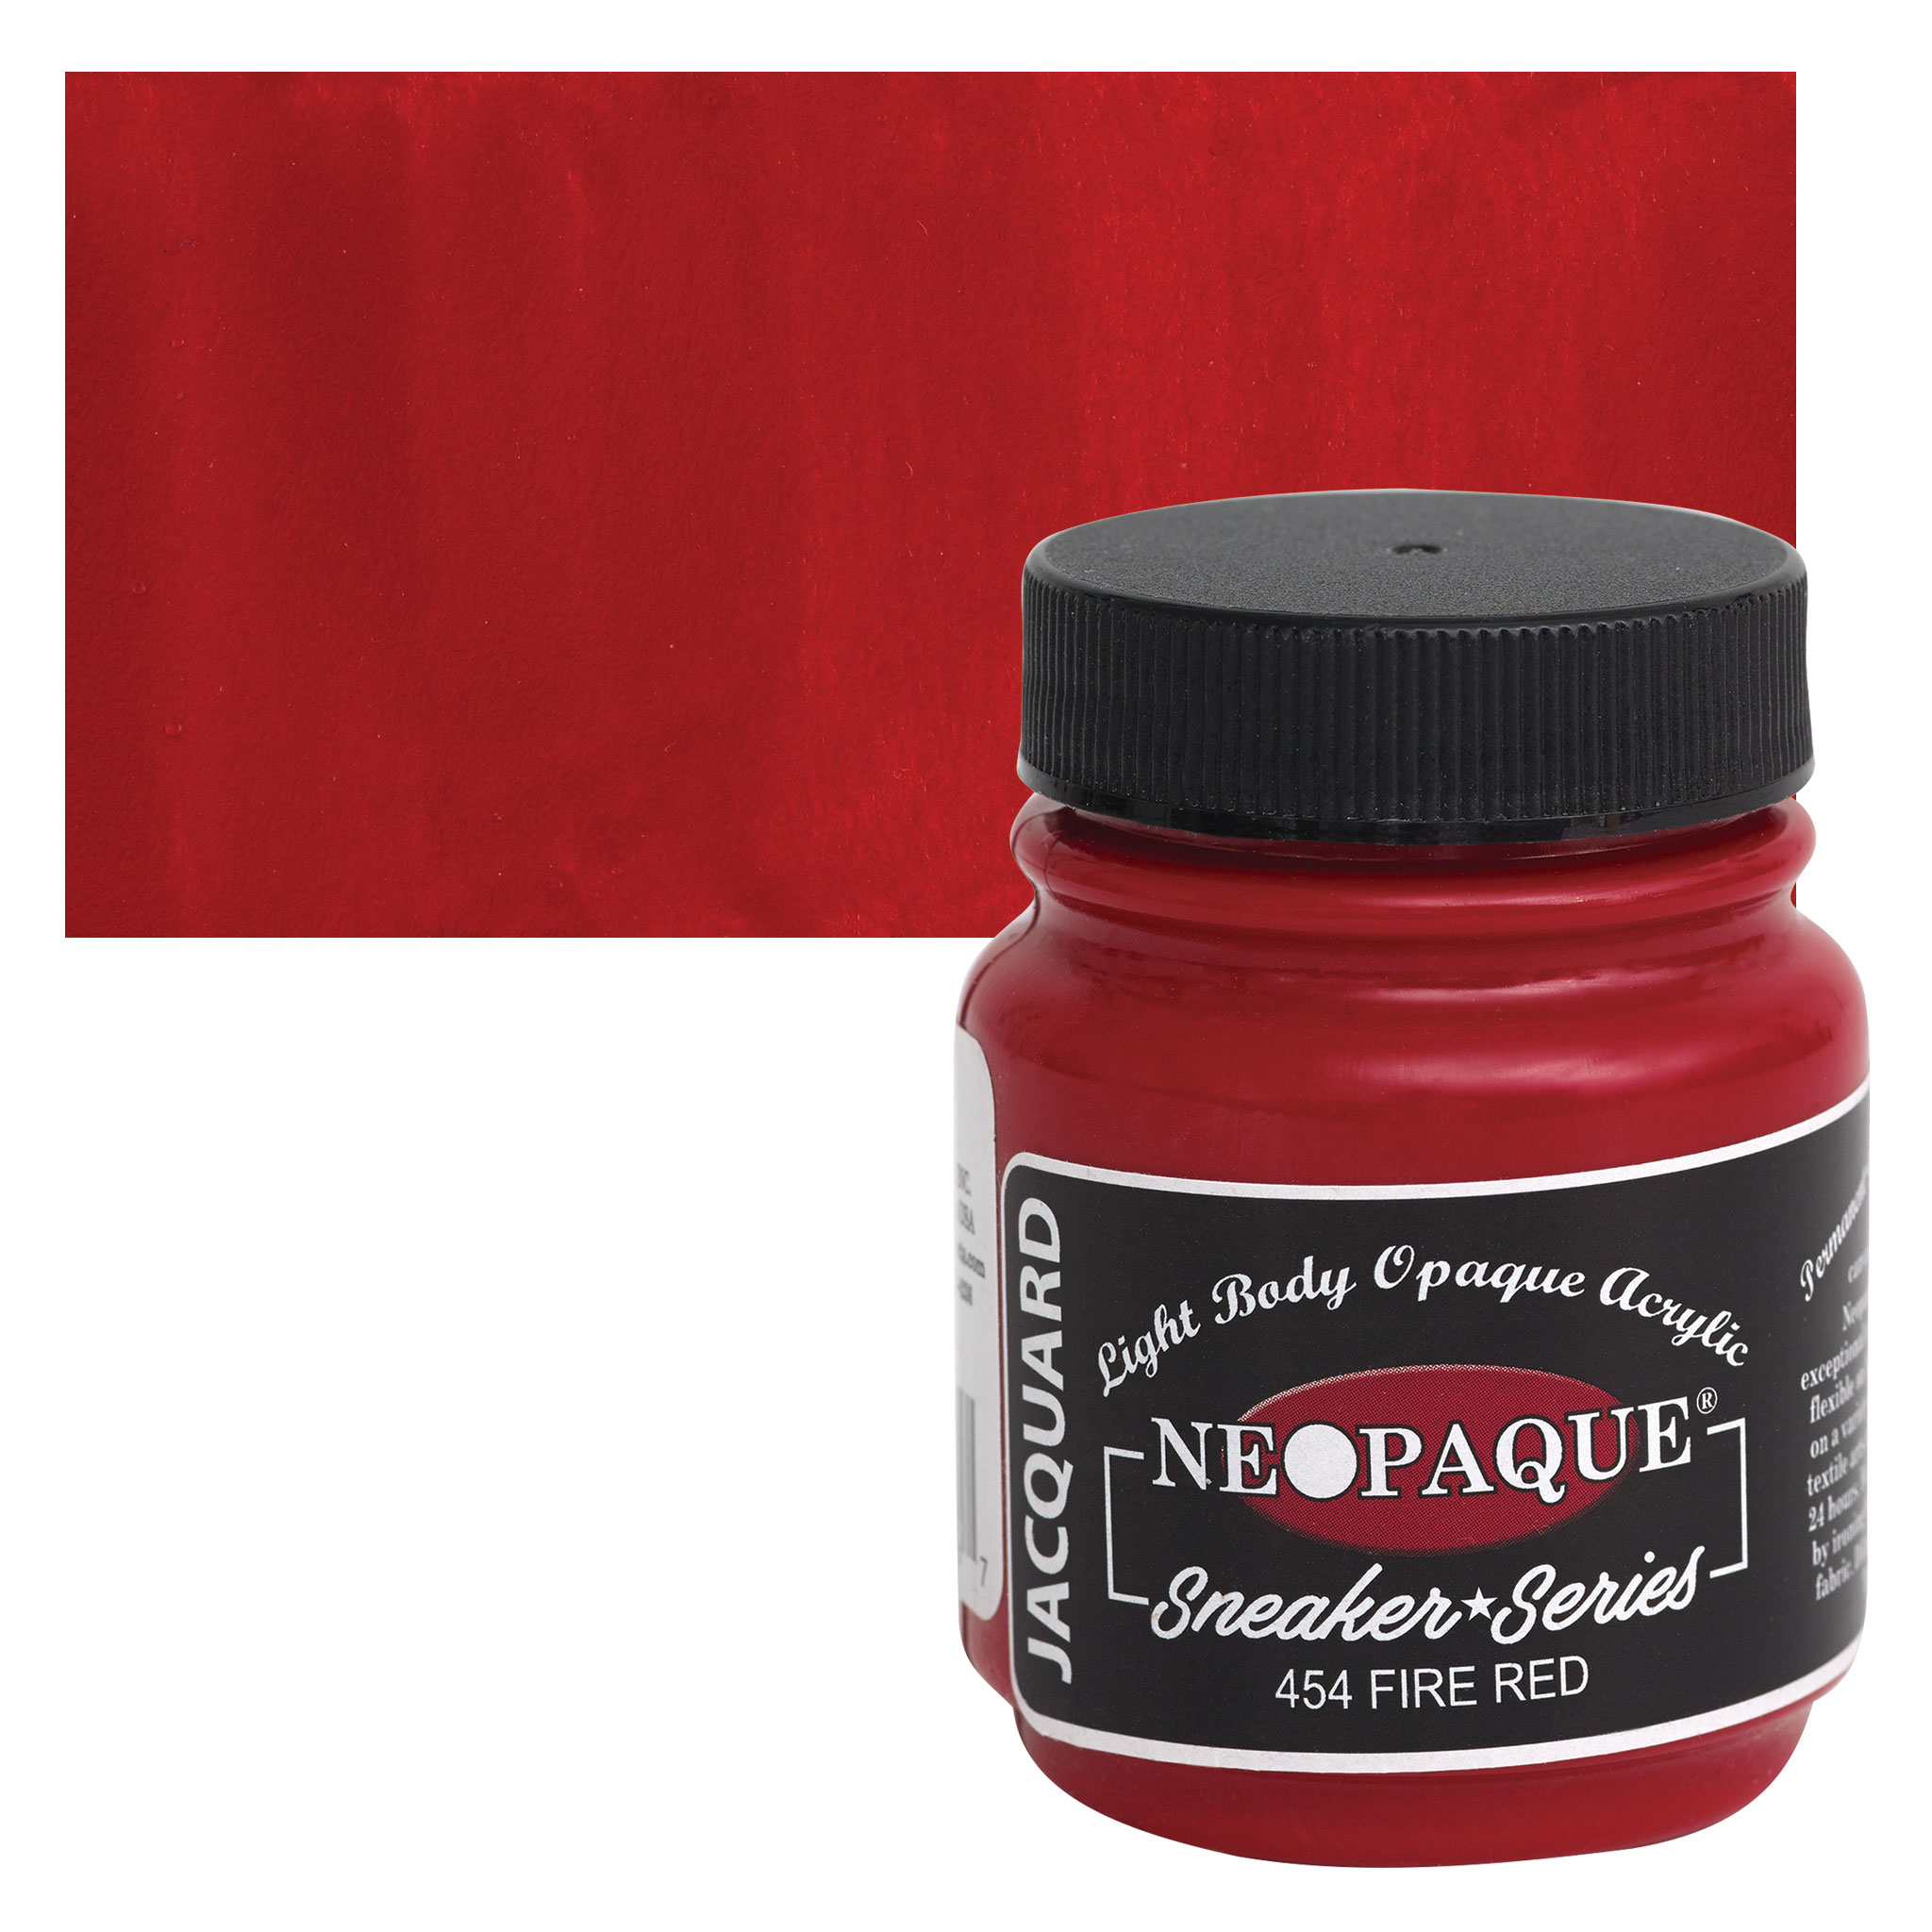 Jacquard Neopaque Fabric Paints - 1 bottle - Choose Color